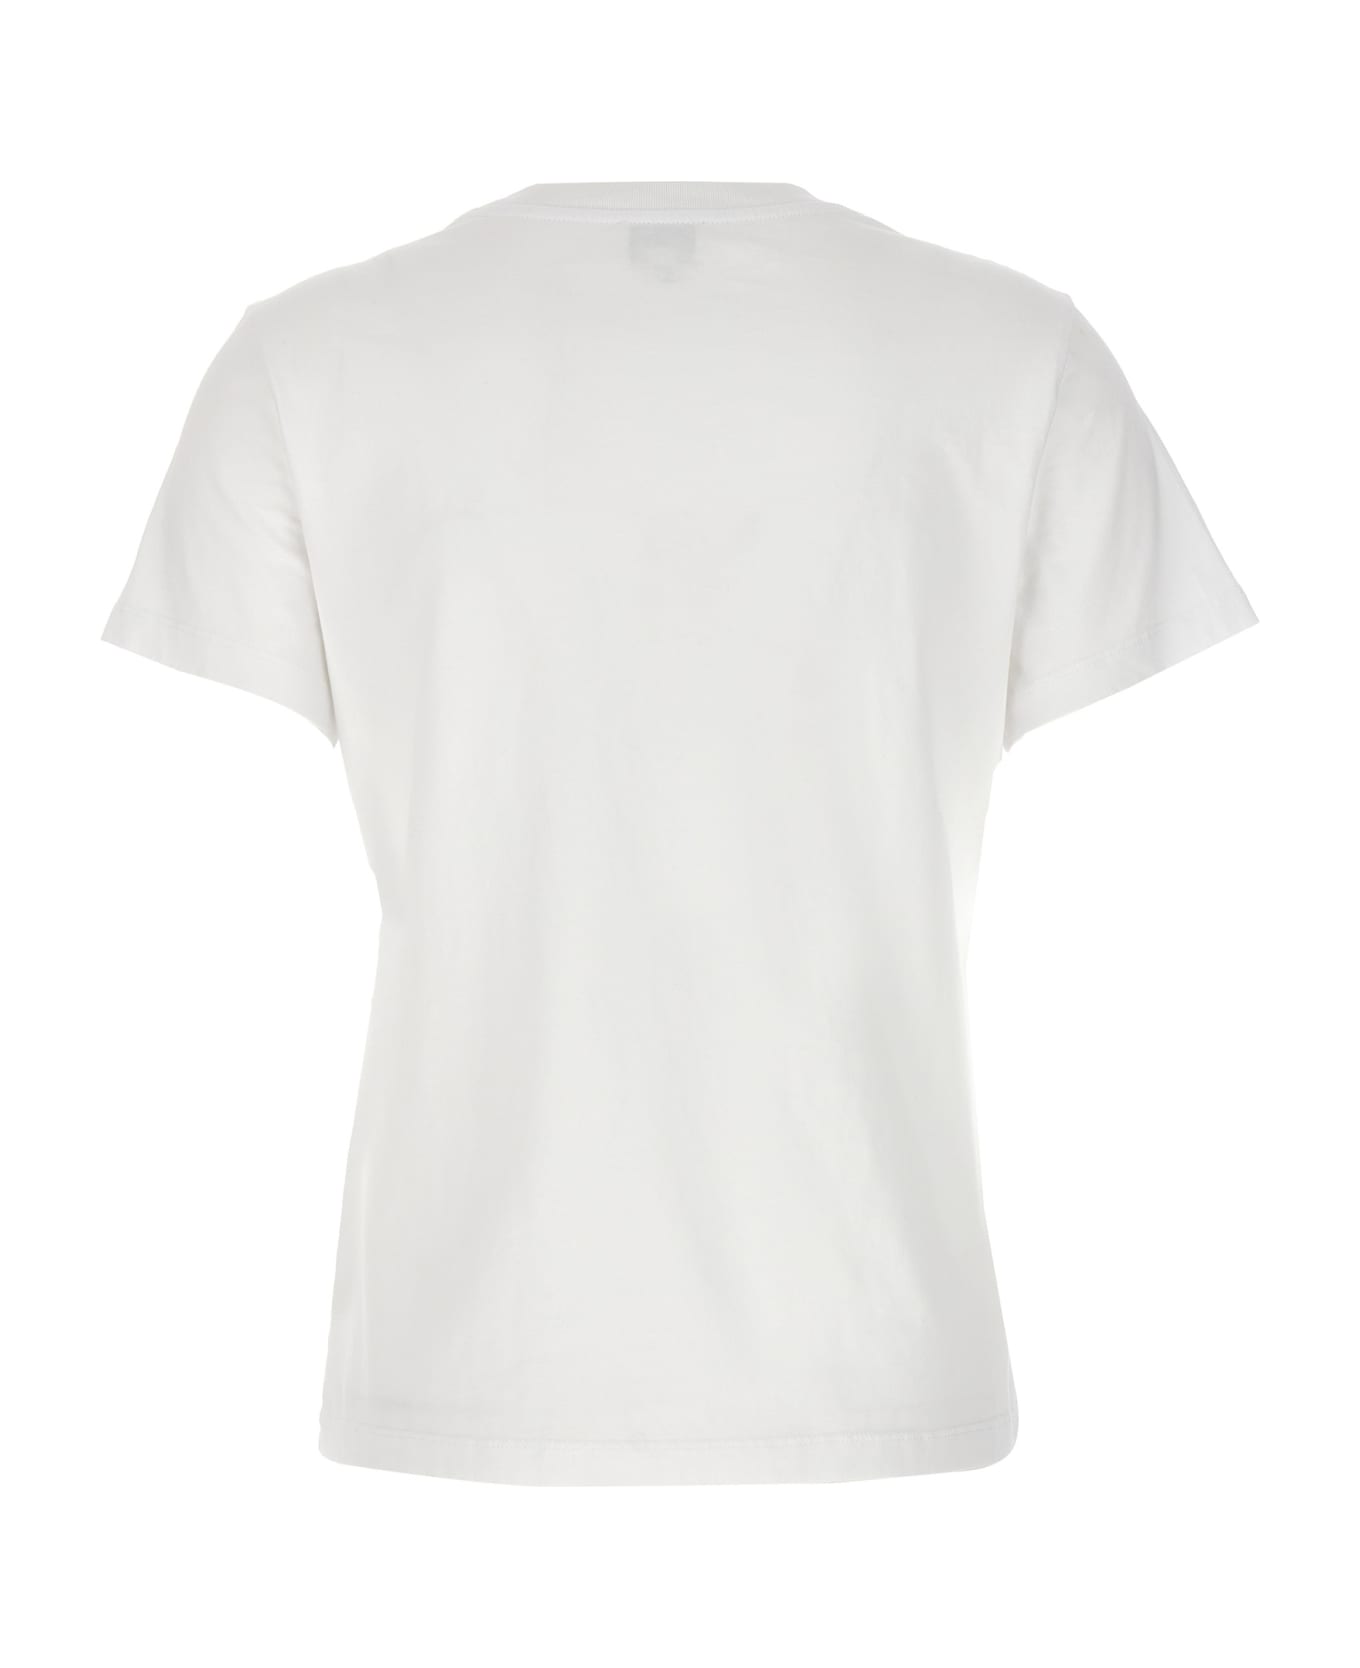 Kenzo 'boke 2.0' T-shirt - White Tシャツ